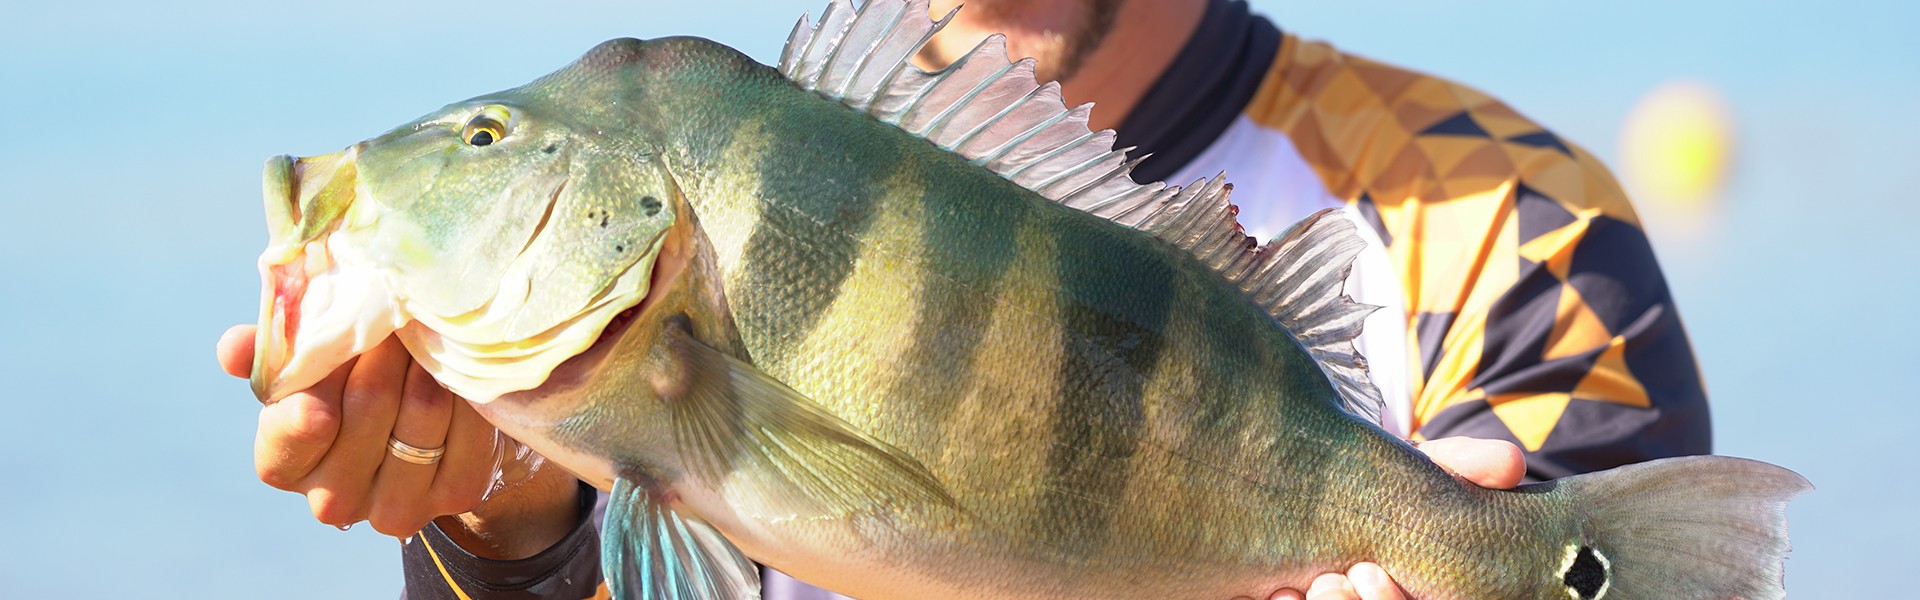 10º Torneio Nacional de Pesca Esportiva 2019 bateu recorde de peixes grandes